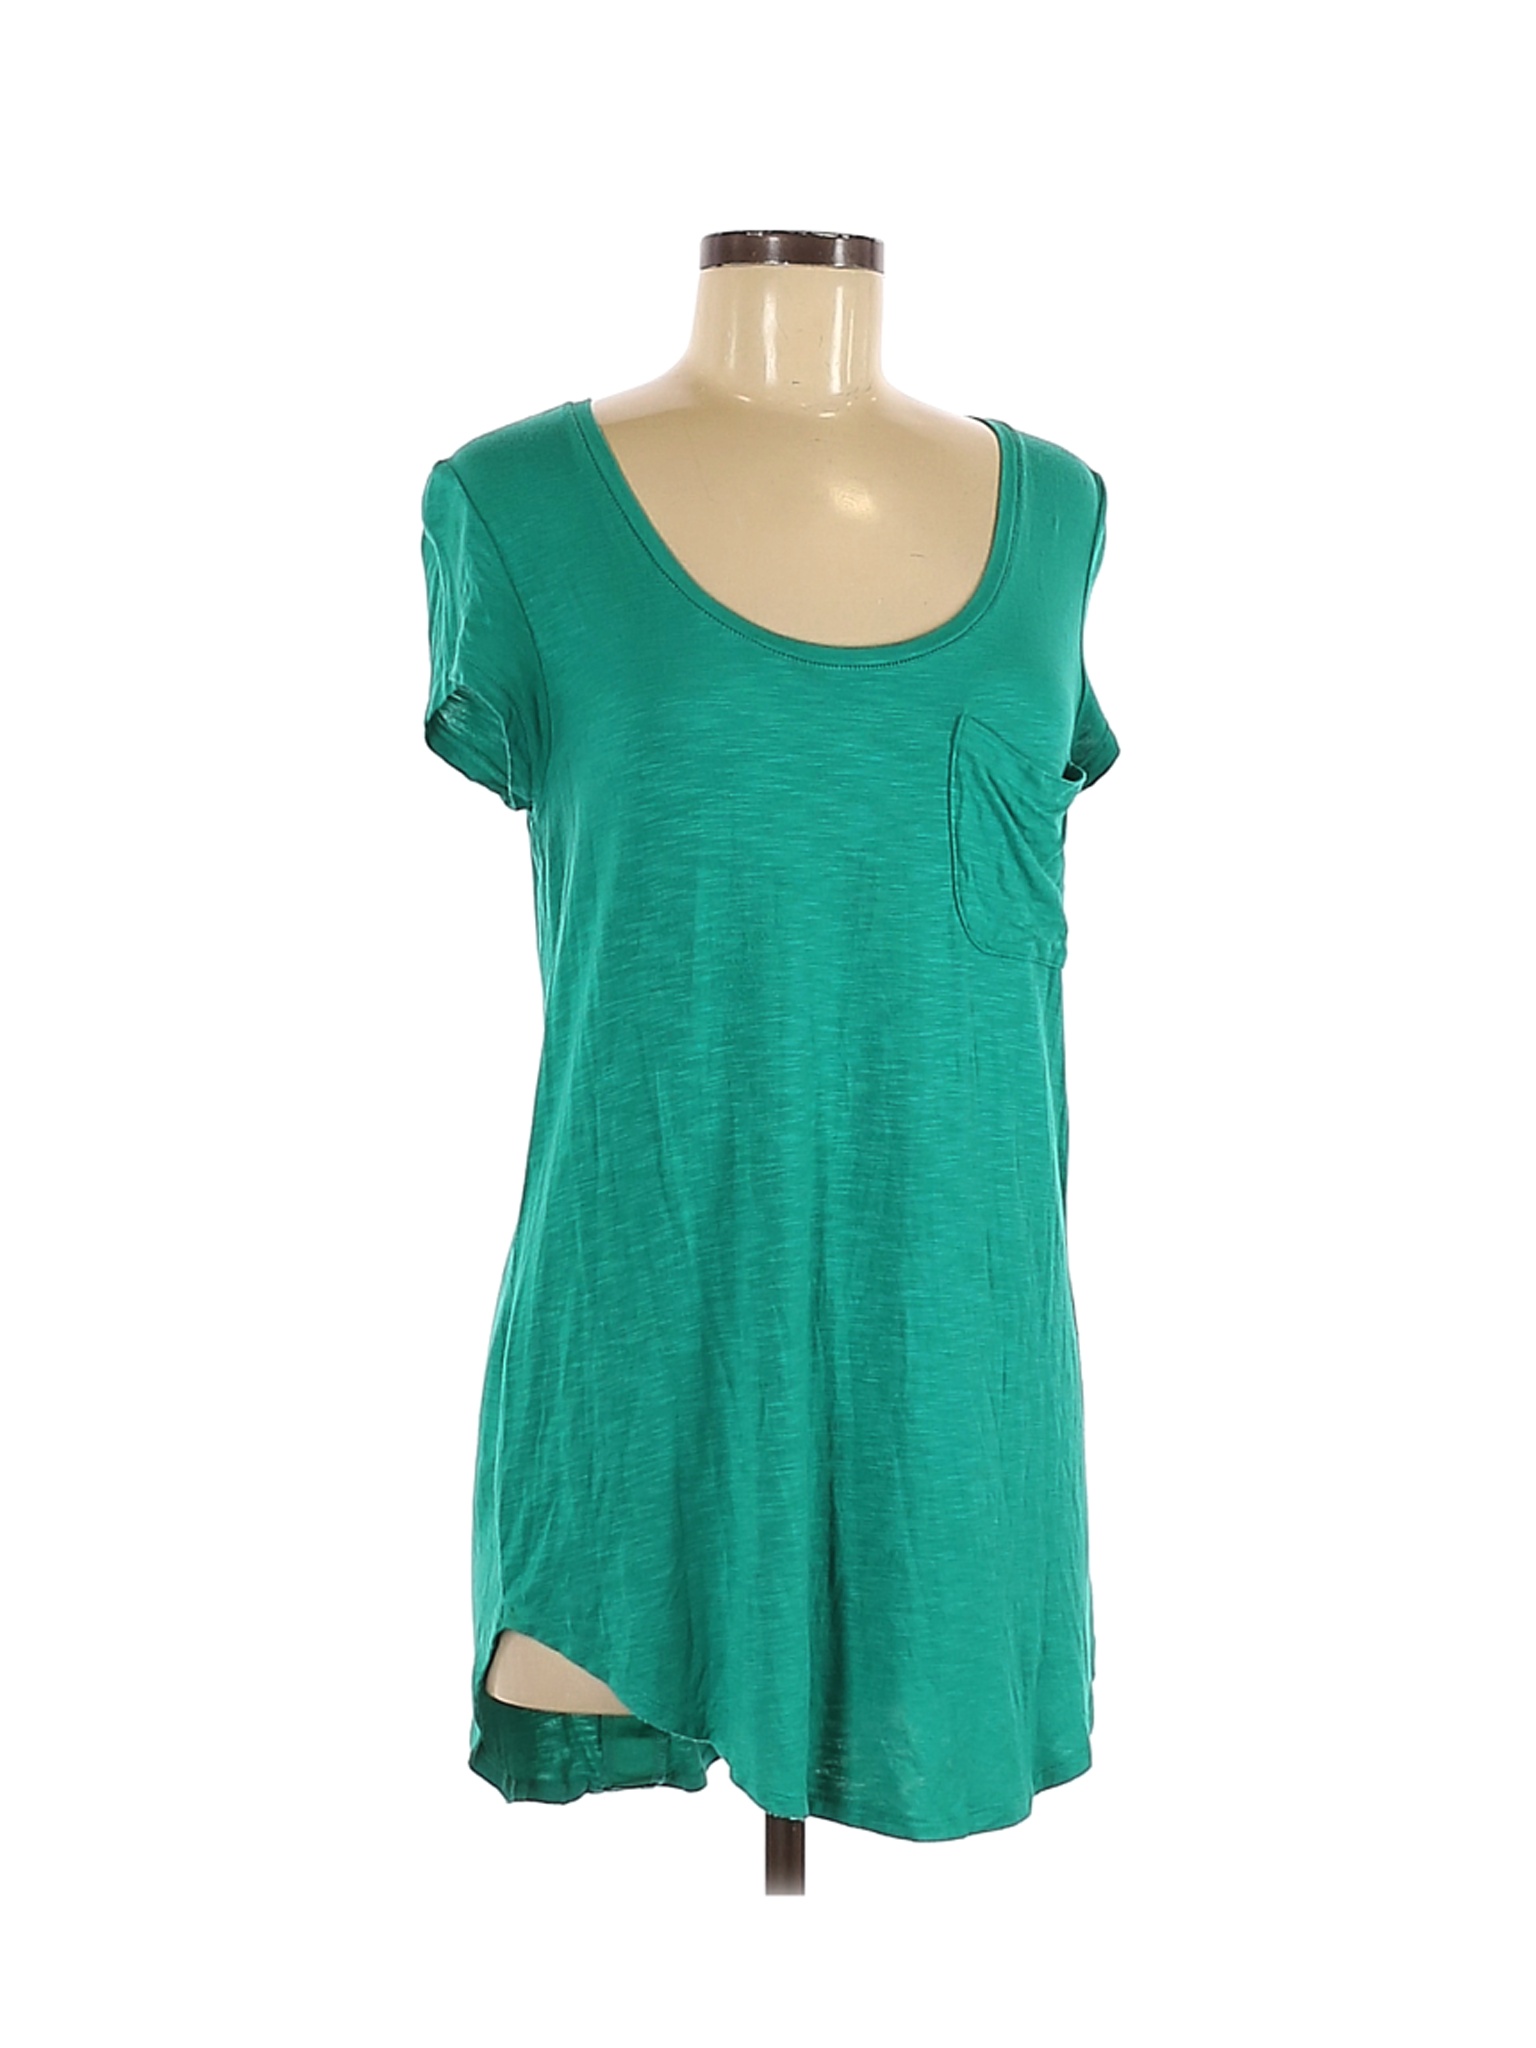 Pure & Good Women Green Short Sleeve T-Shirt M | eBay